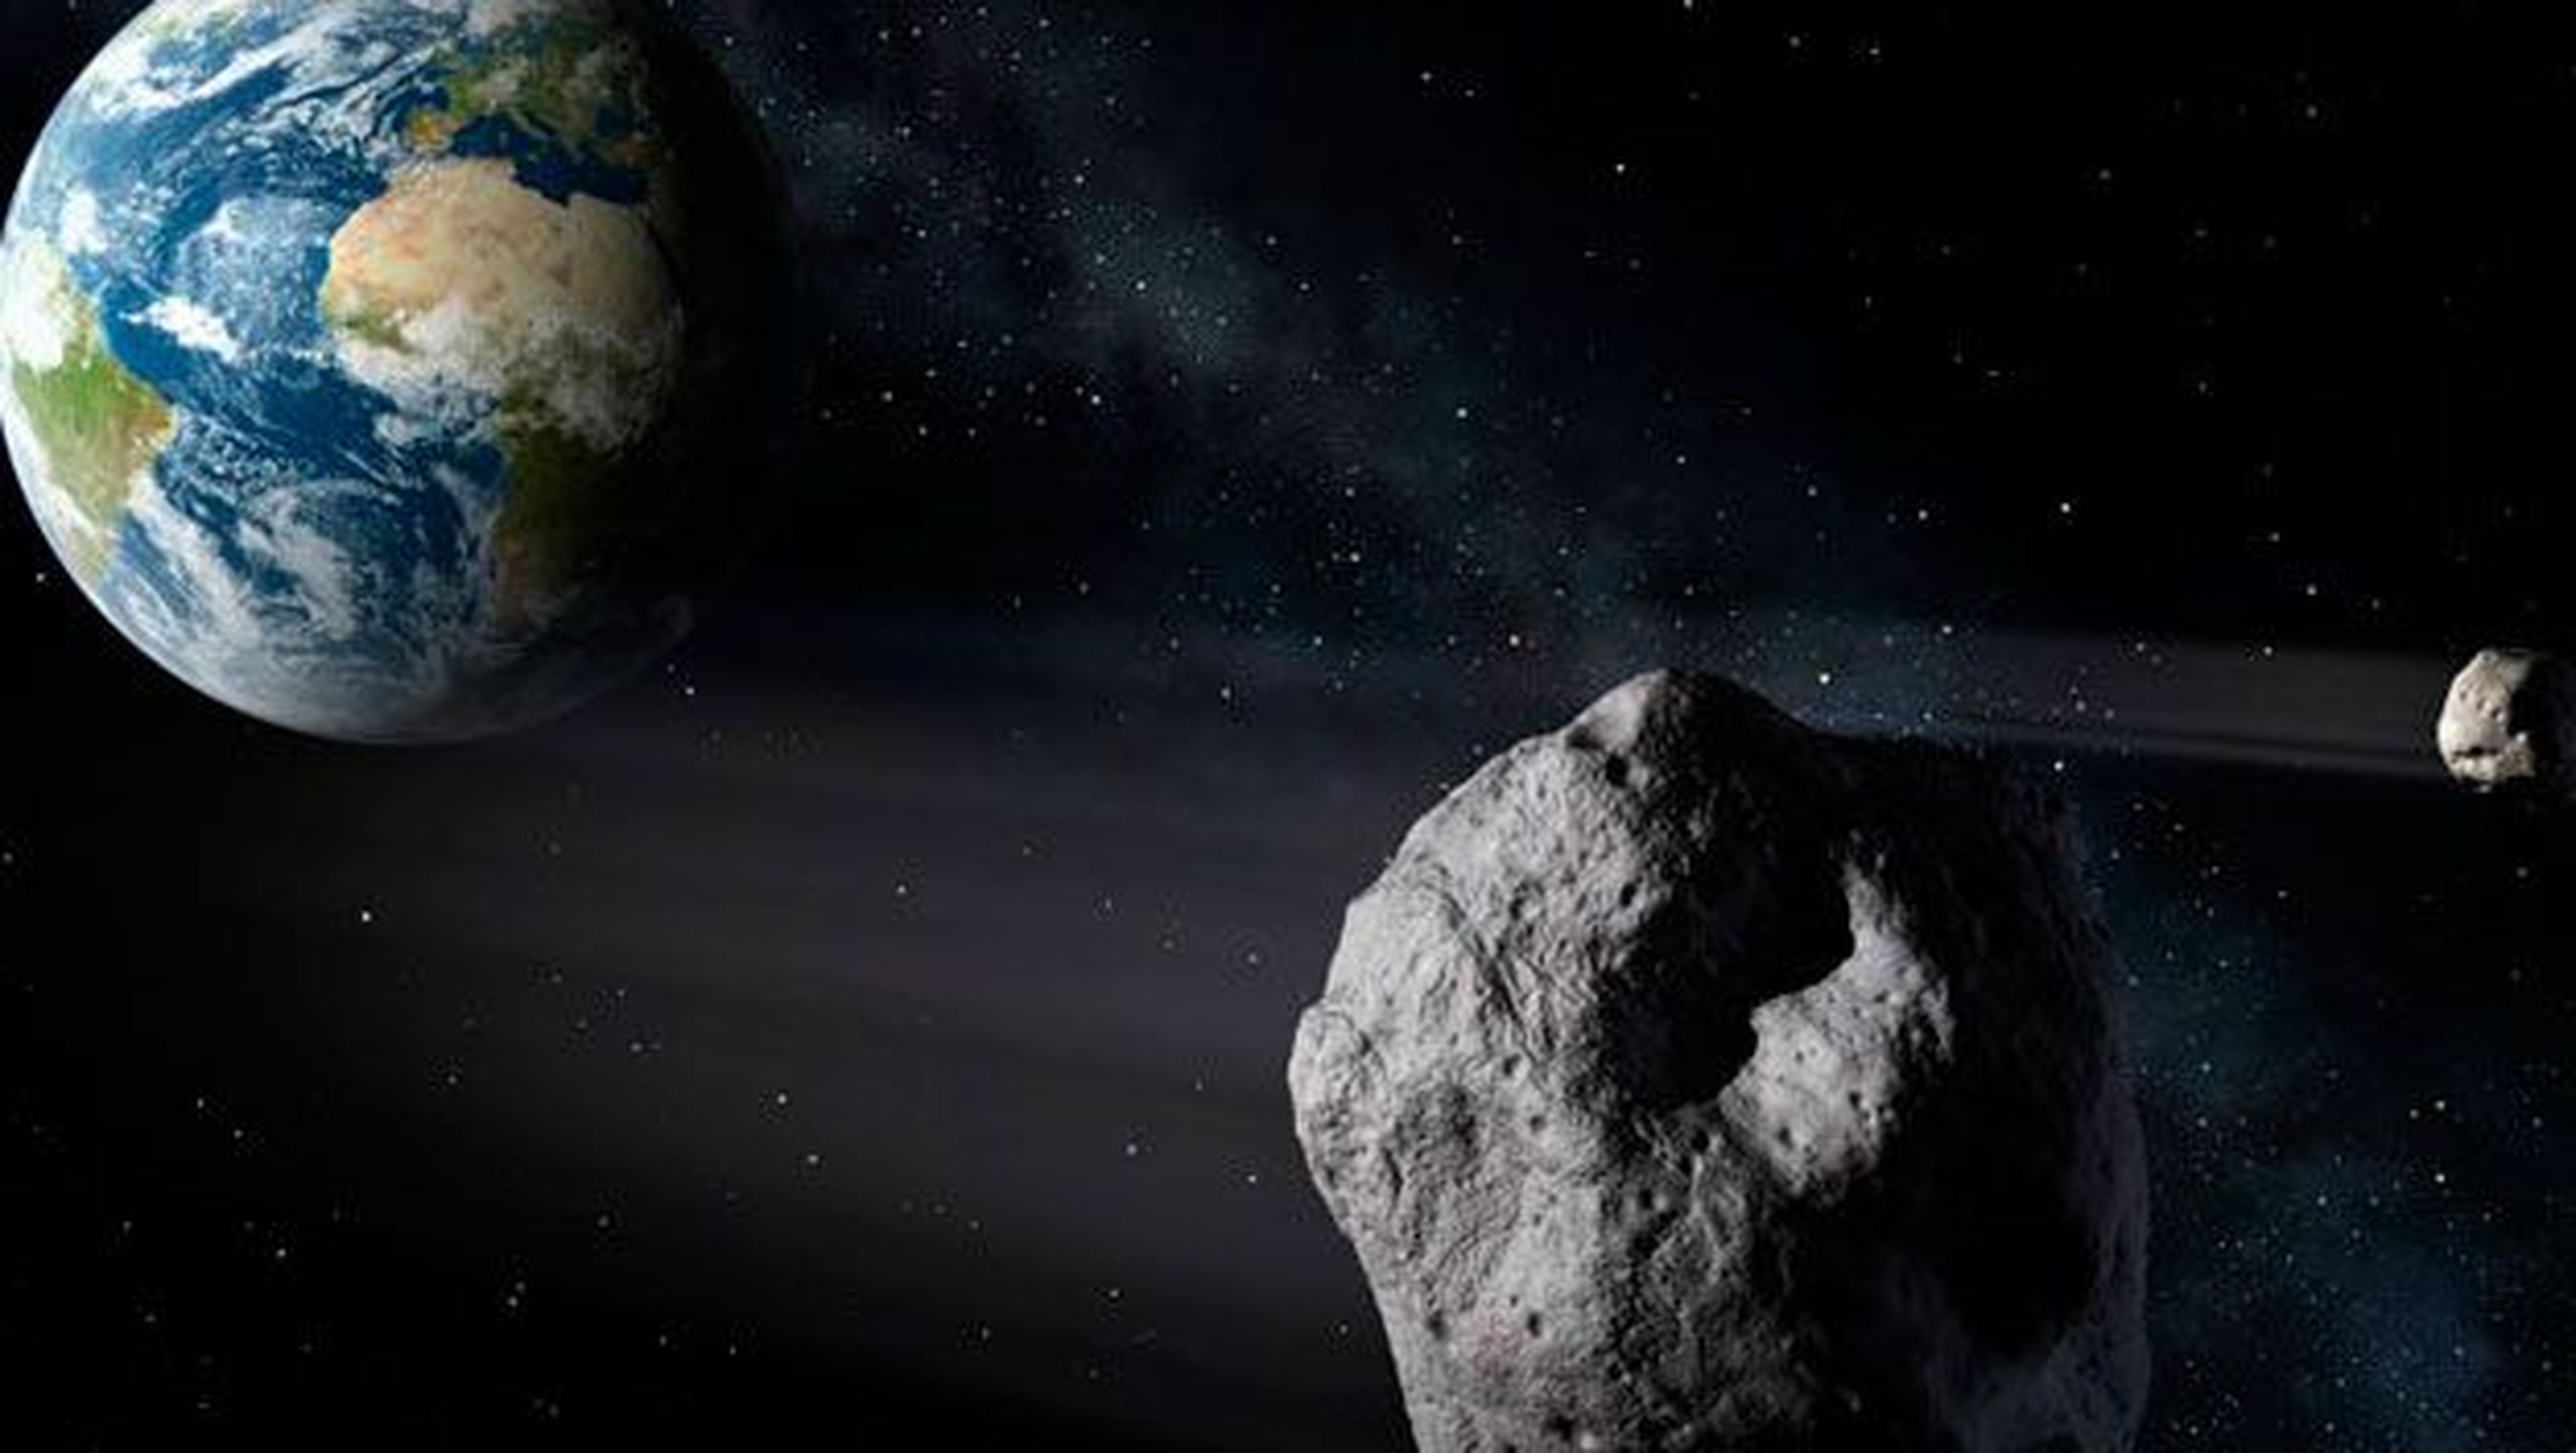 asteroide tierra